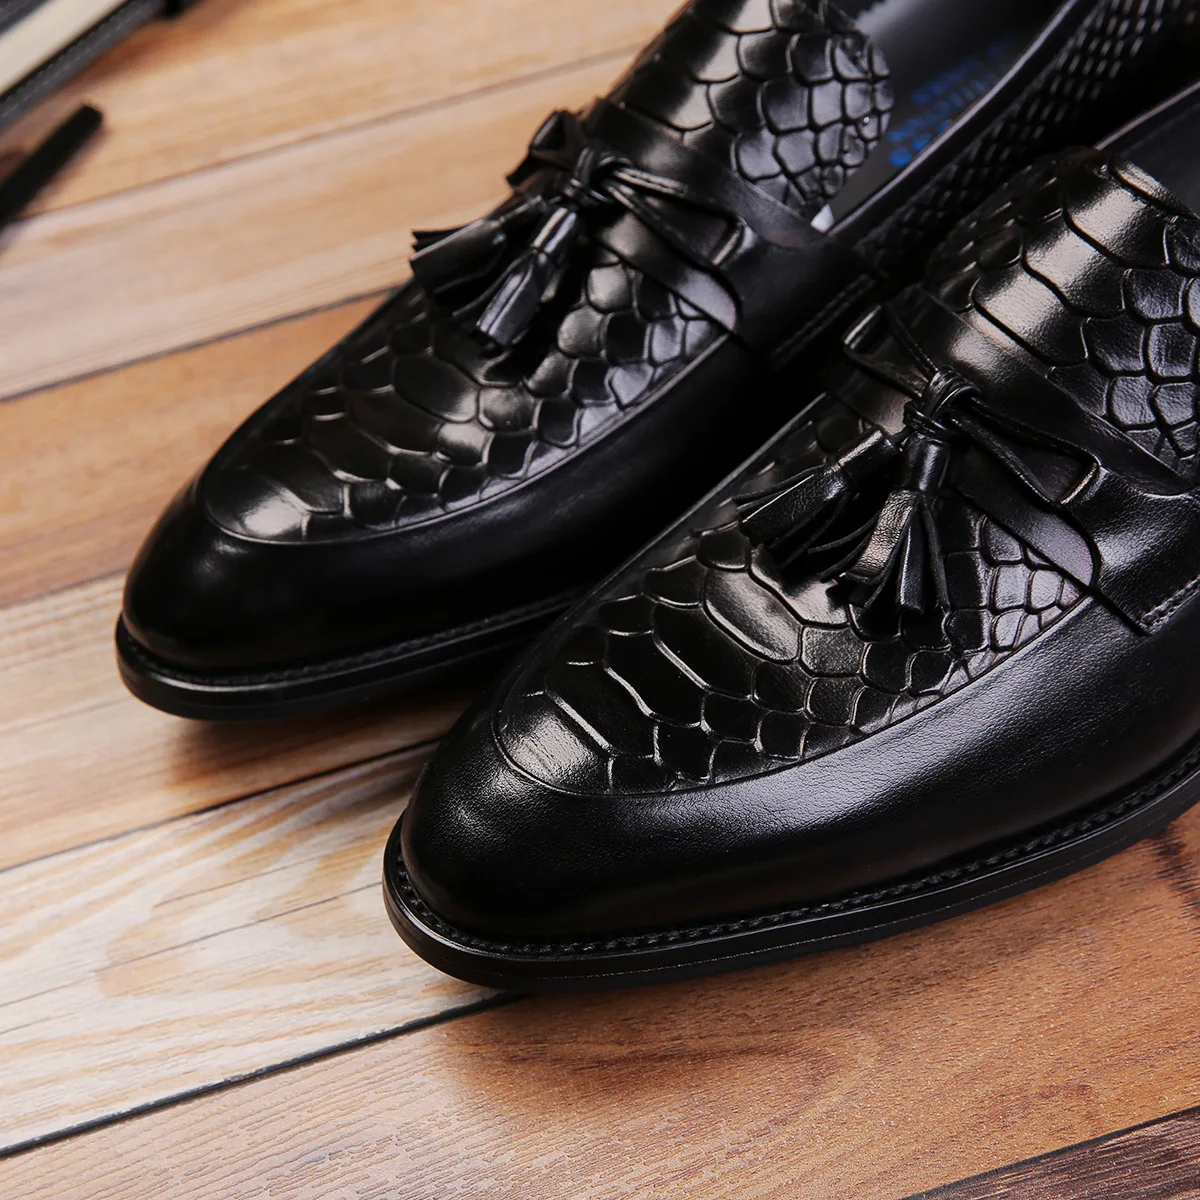 QYFCIOUFU/Новое поступление; нарядные туфли для мужчин в деловом стиле с кисточками и змеиным узором; слипоны; модельные туфли из натуральной